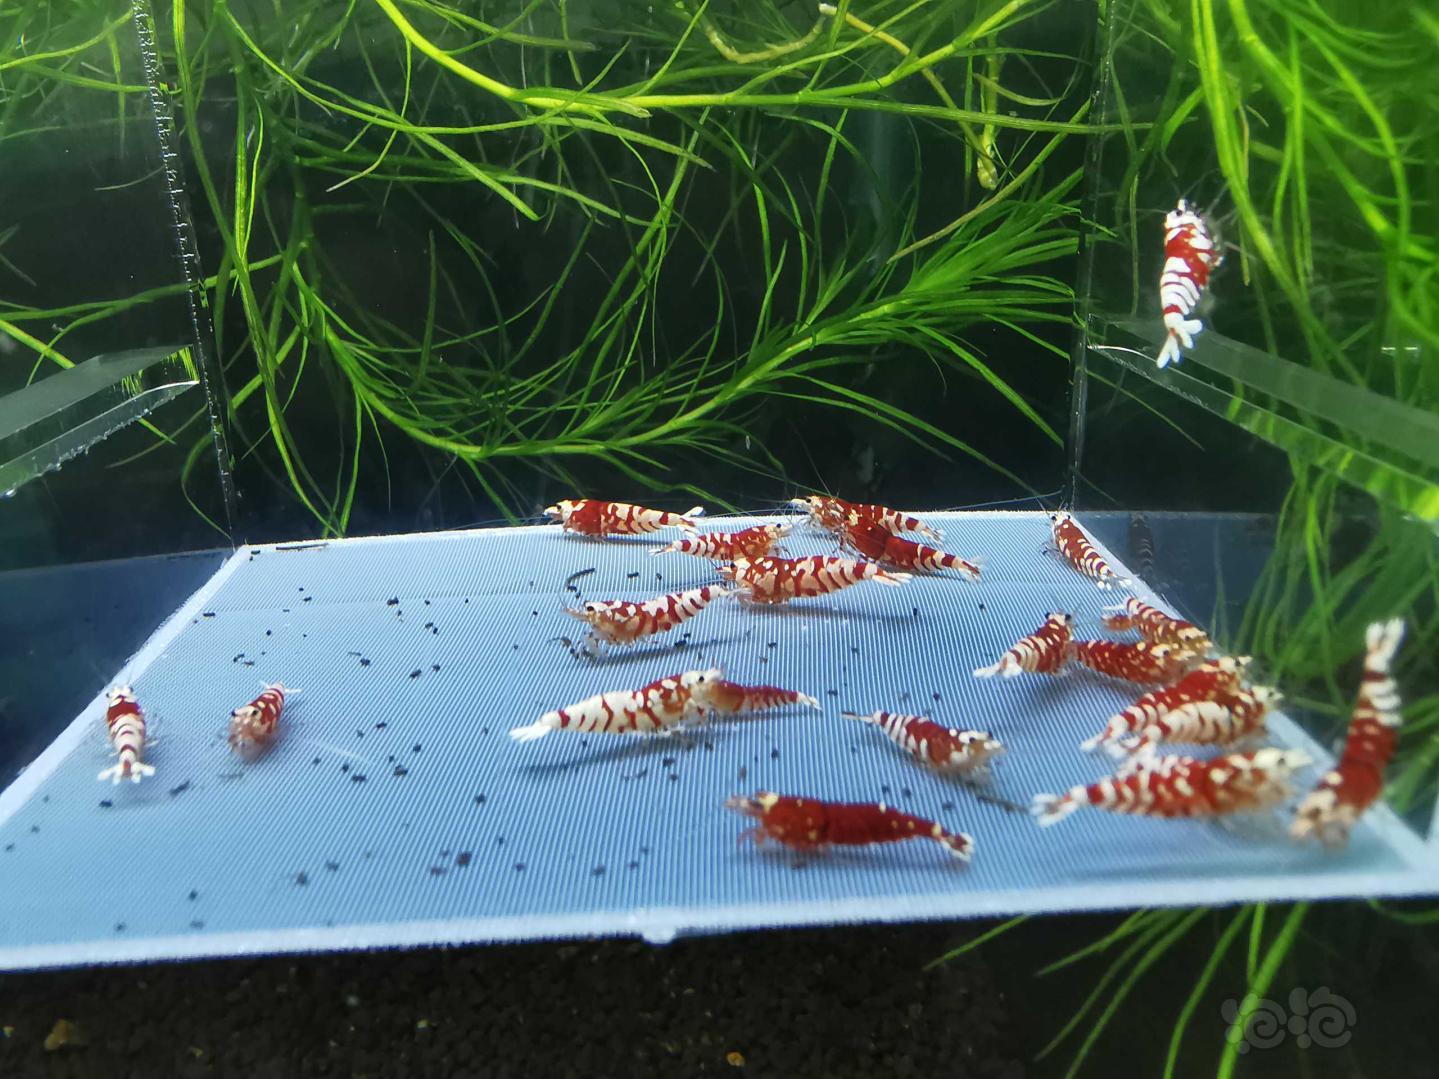 【虾】2020-10-18#RMB拍卖#太极红花虎水晶虾一份22只-图3